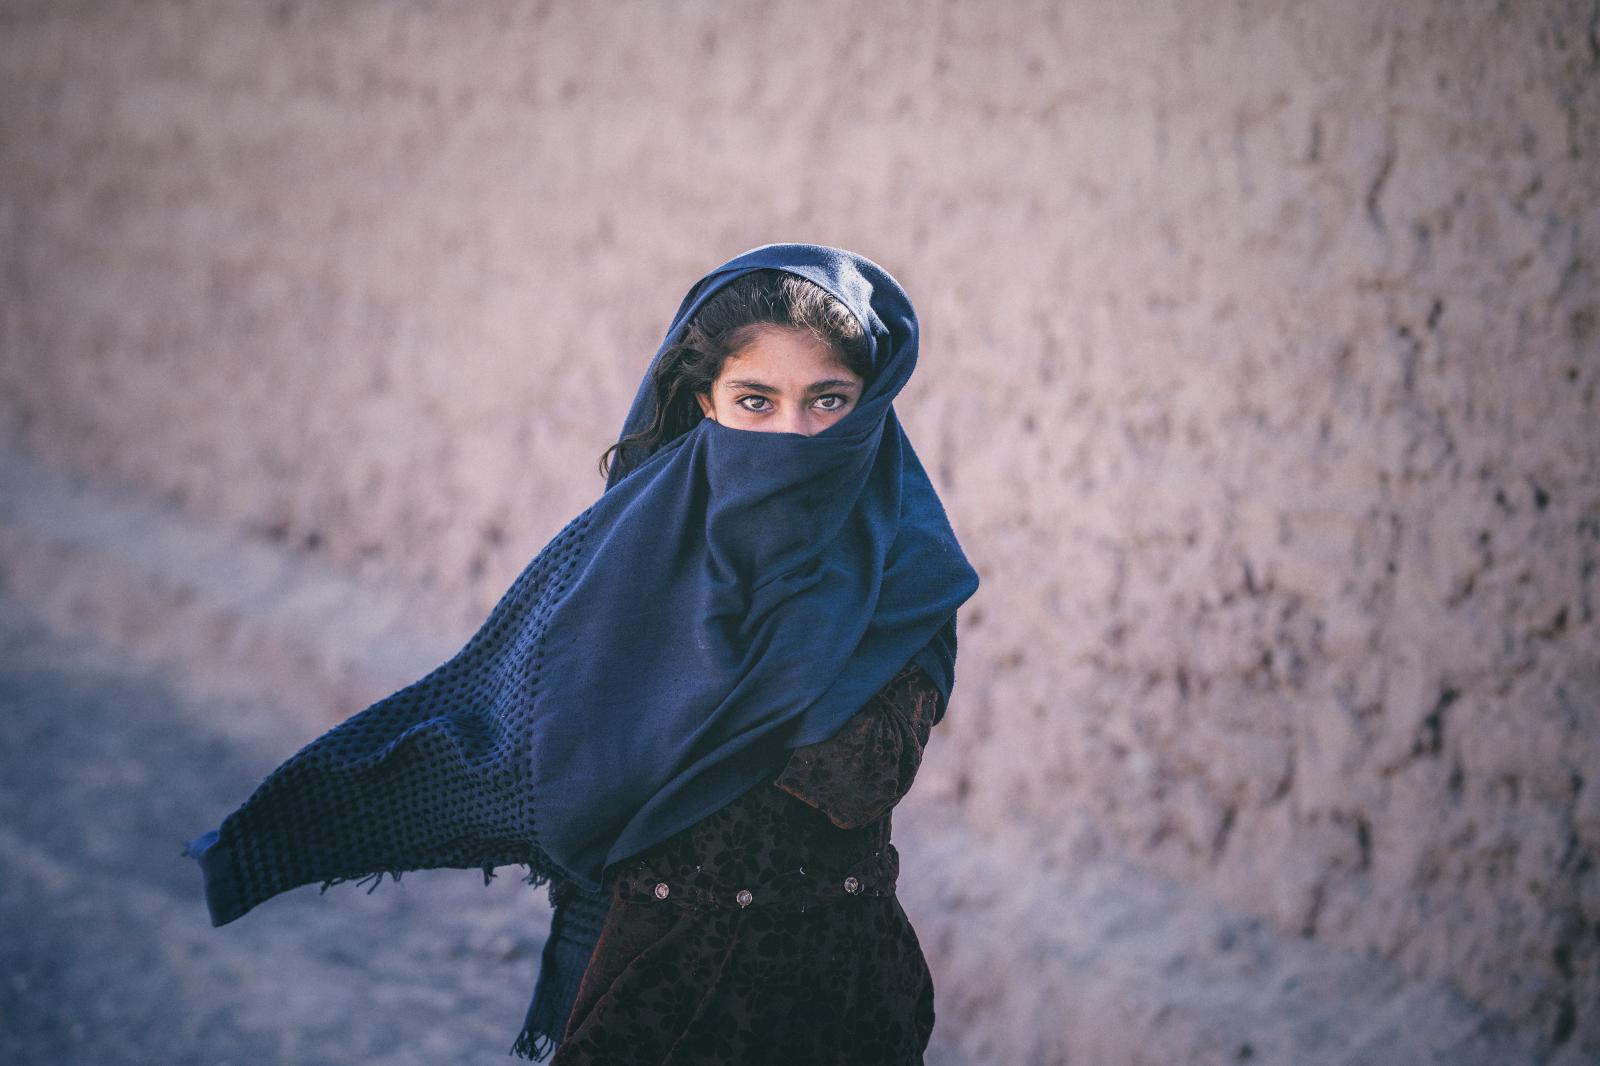 Afghan Girl | Buy this image